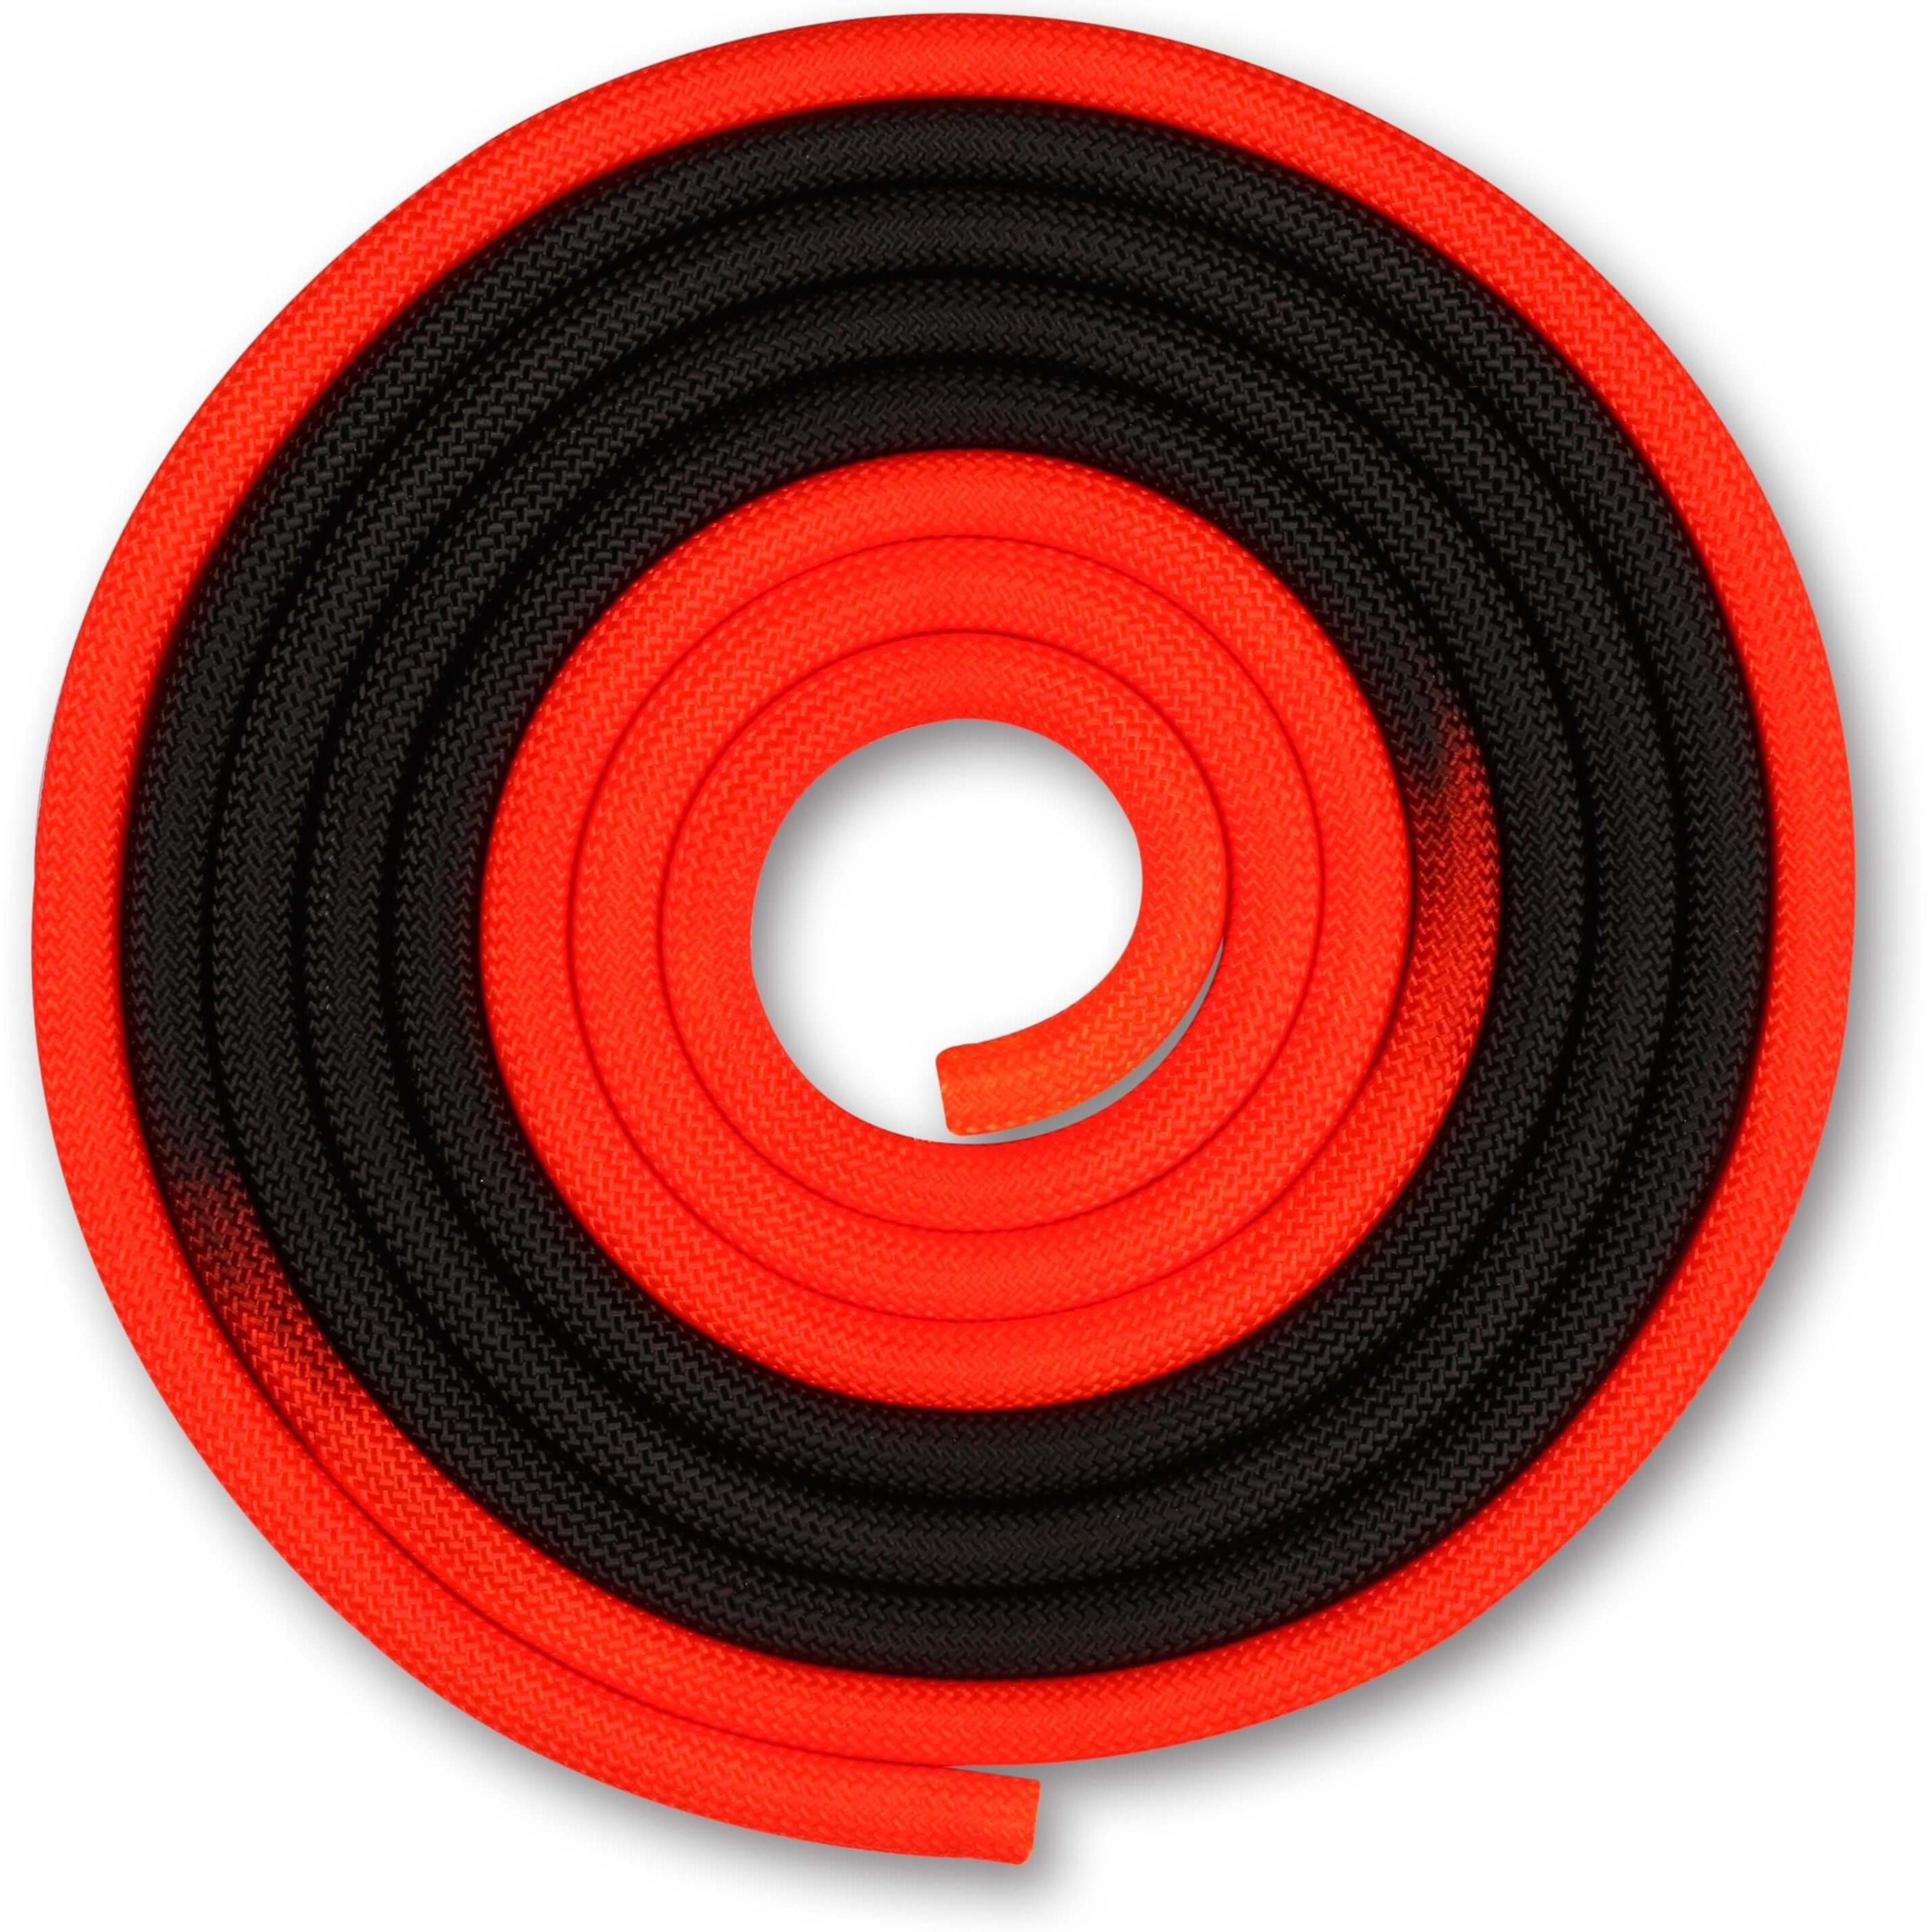 Cuerda para Gimnasia Rítmica Ponderada 165g INDIGO Bicolor 3 m Rojo-Negro